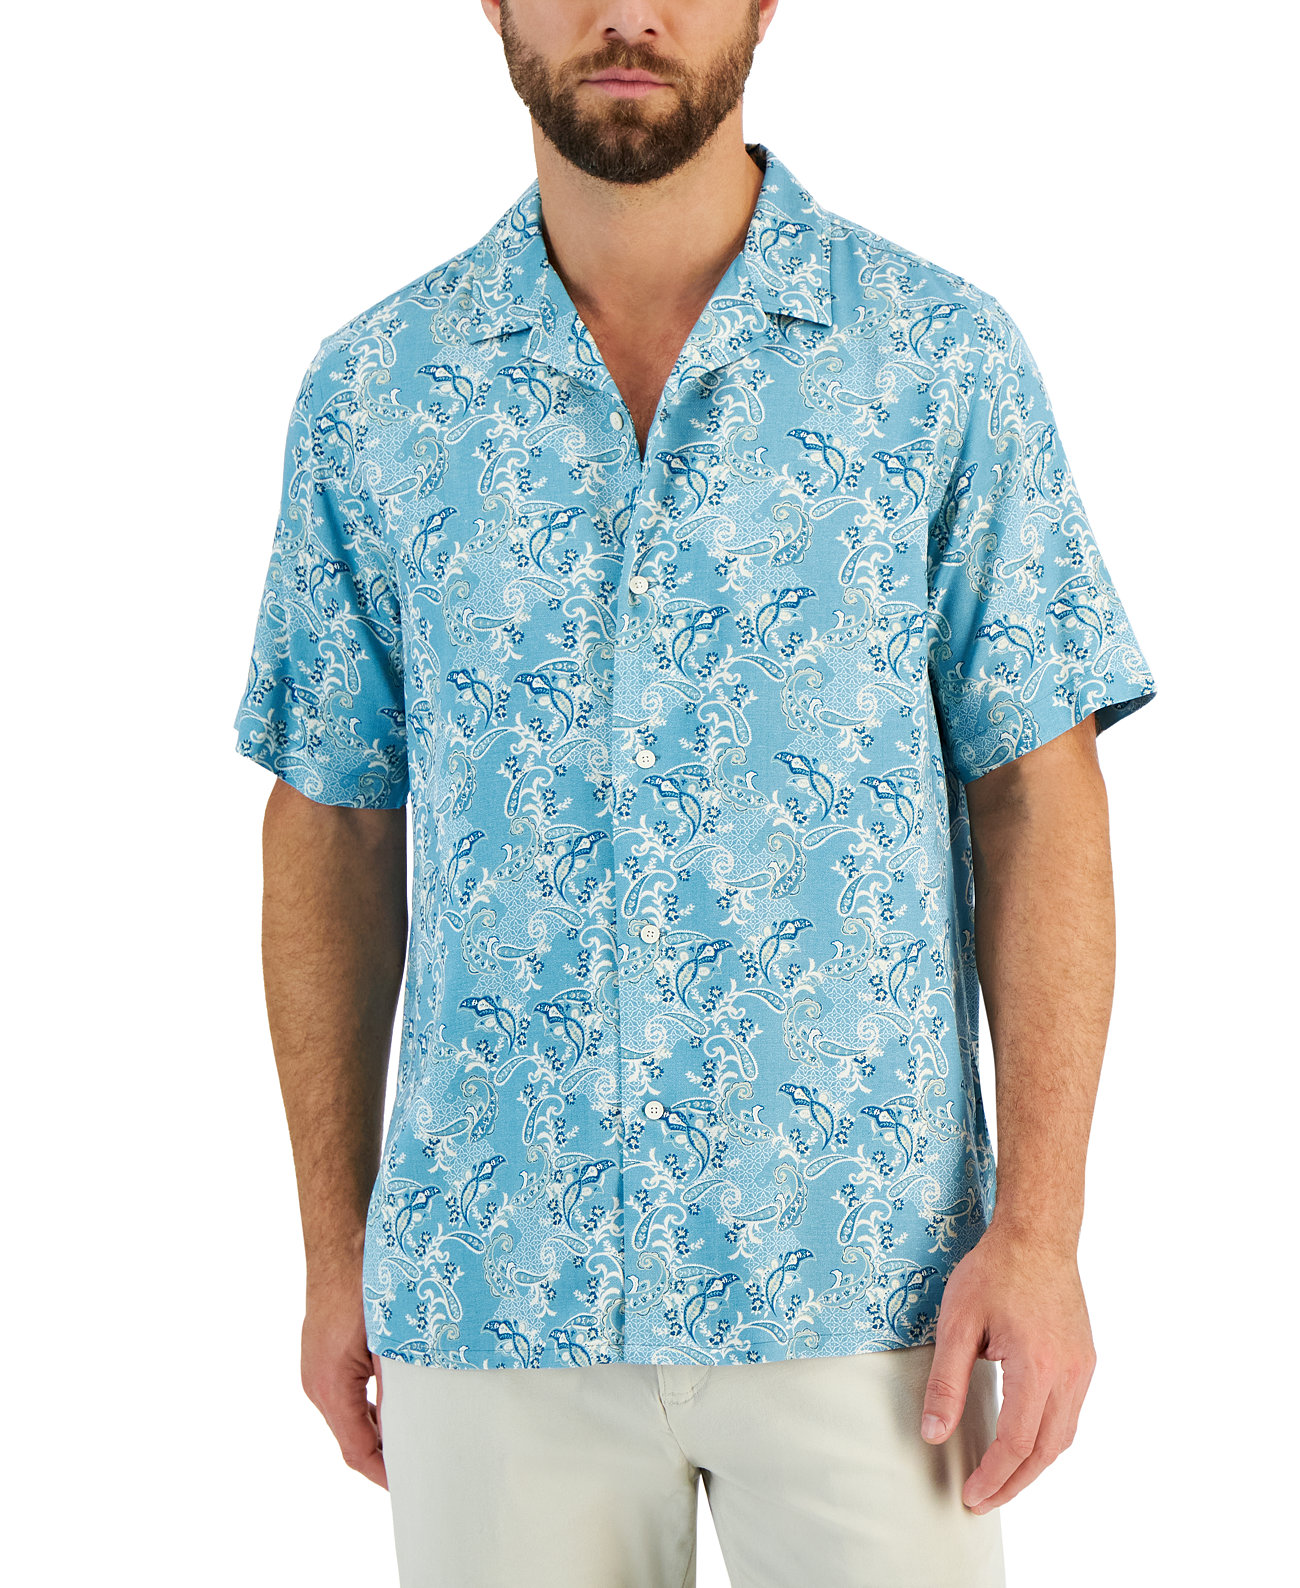 Мужская рубашка Lazby с завышенной талией и коротким рукавом, созданная для Macy's Club Room